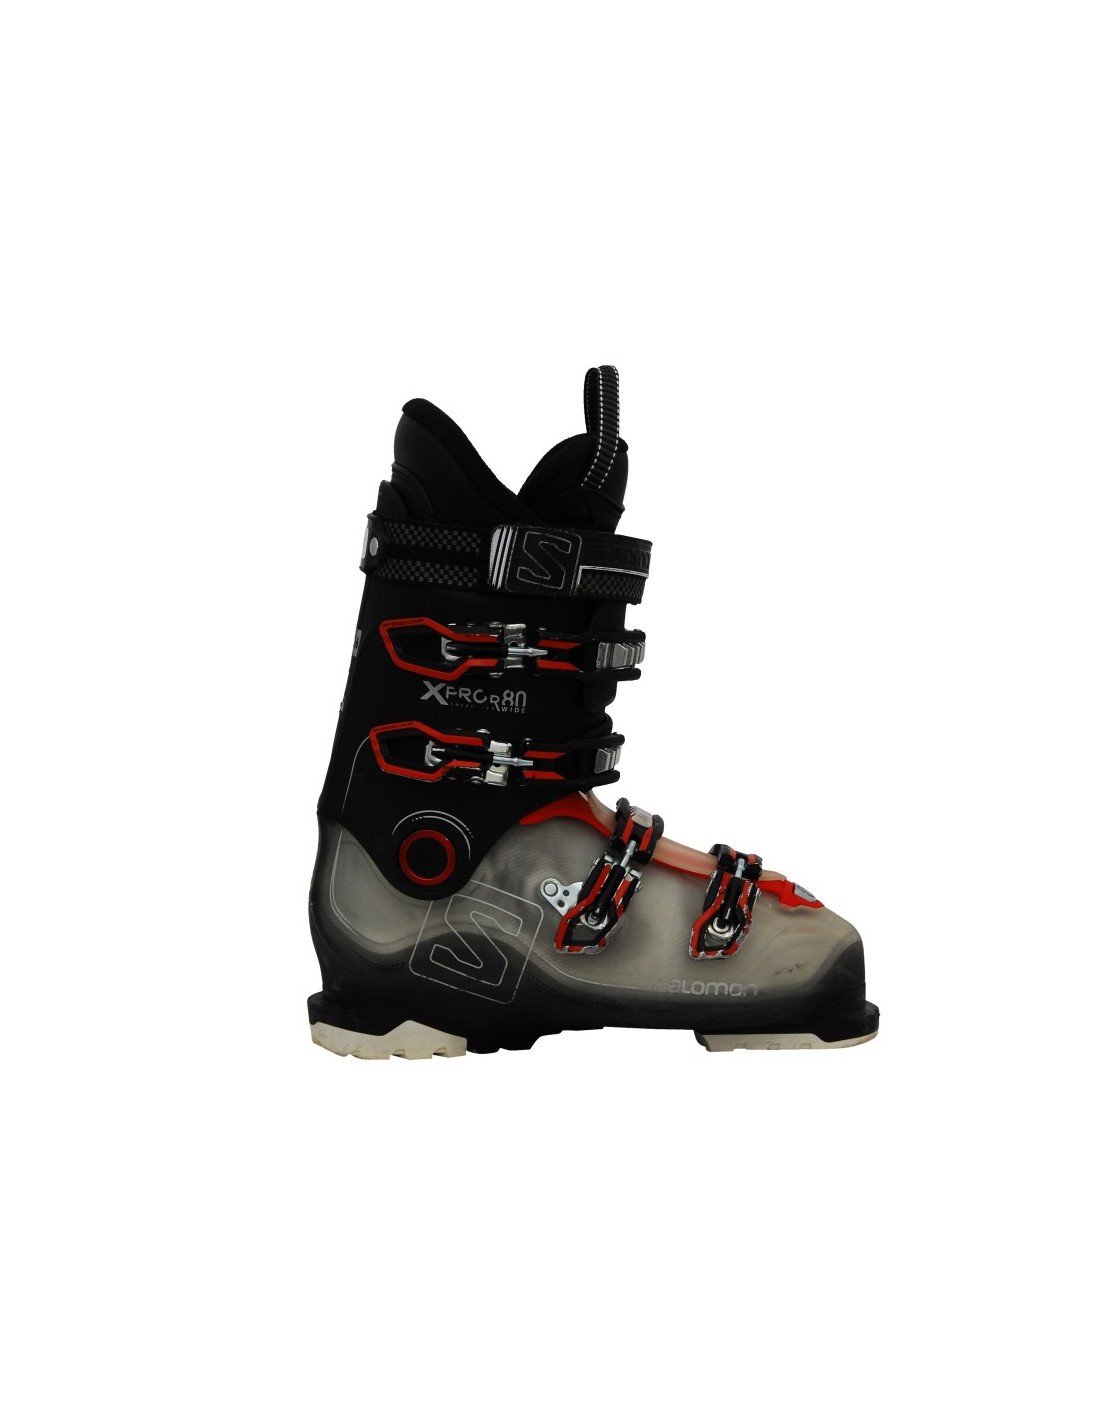 voorbeeld plastic Barry Chaussures de ski Occasion Salomon X Pro R80 Taille de 25 à 29.5 Mondopoint